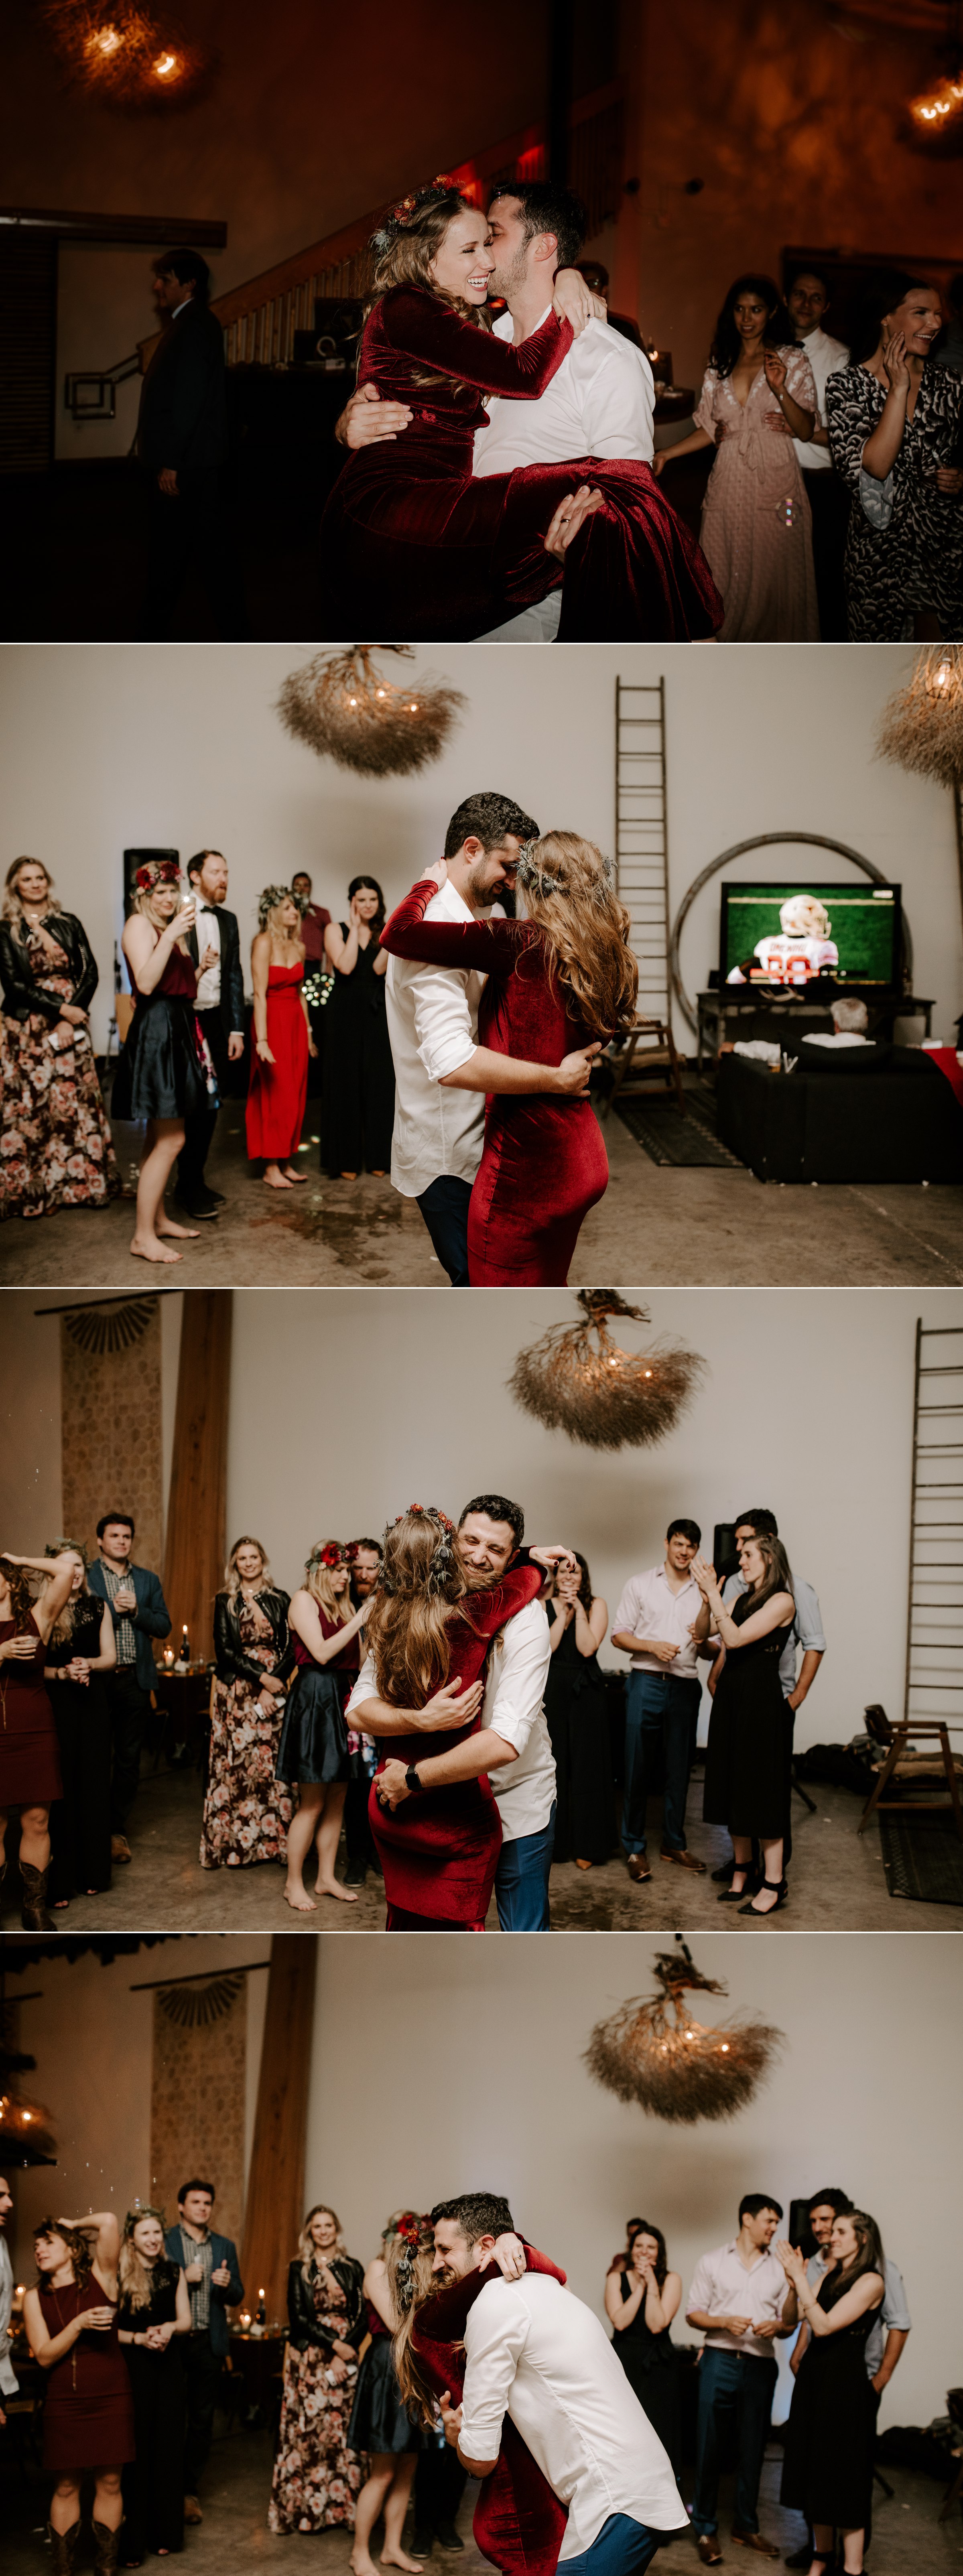  dancing vuka collective wedding austin texas 